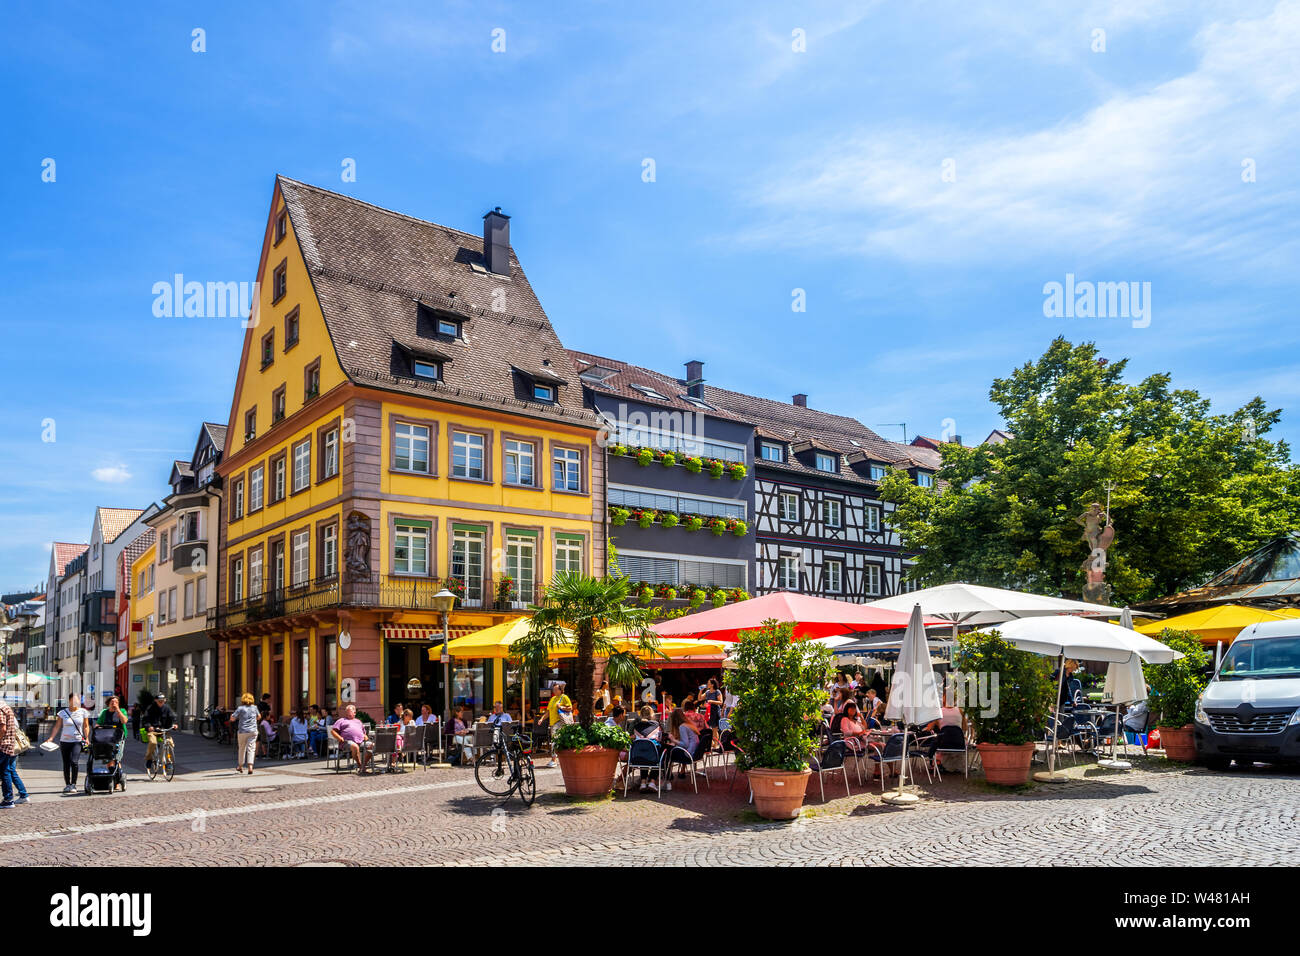 Ville historique d'Offenburg, Allemagne Banque D'Images